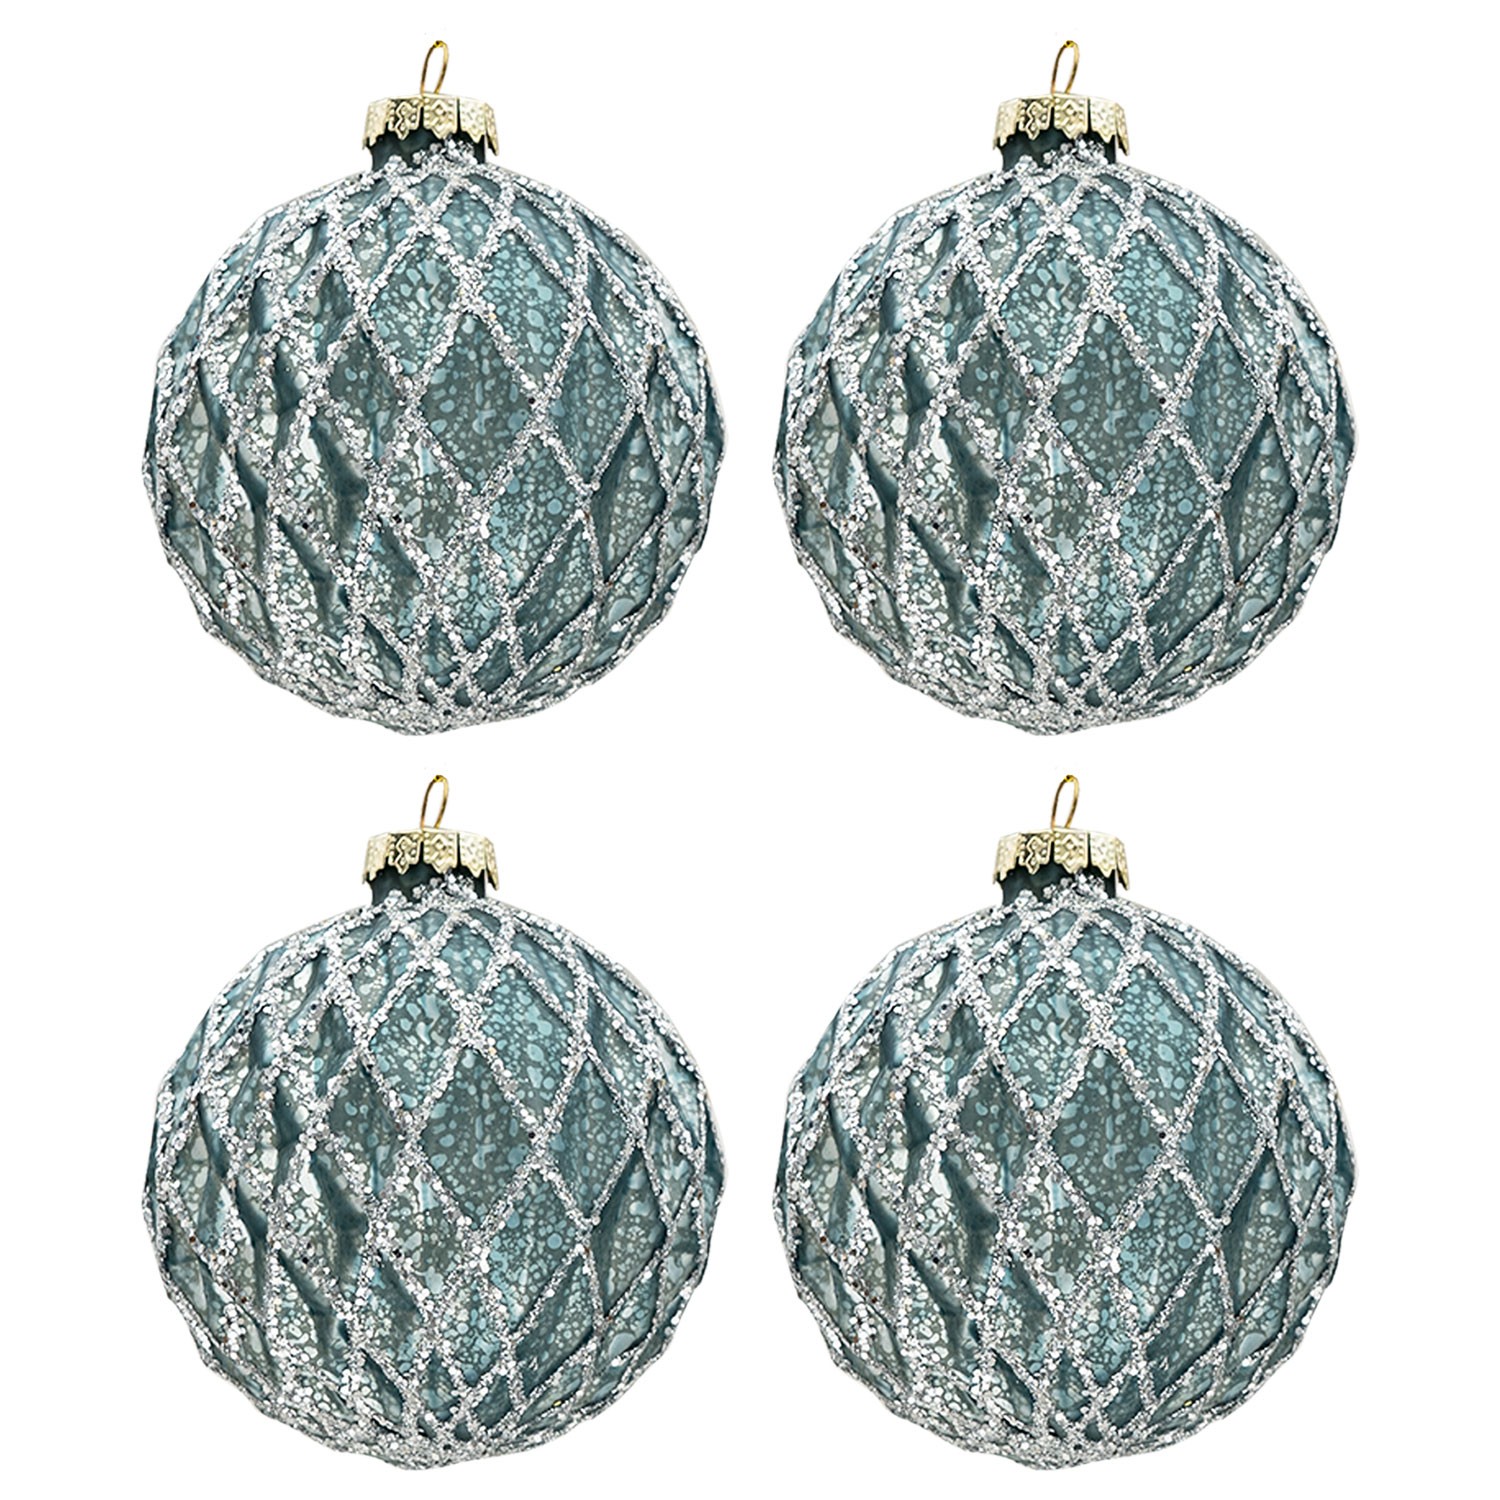 Modro-stříbrná vánoční koule (sada 4ks) - Ø 8cm Clayre & Eef